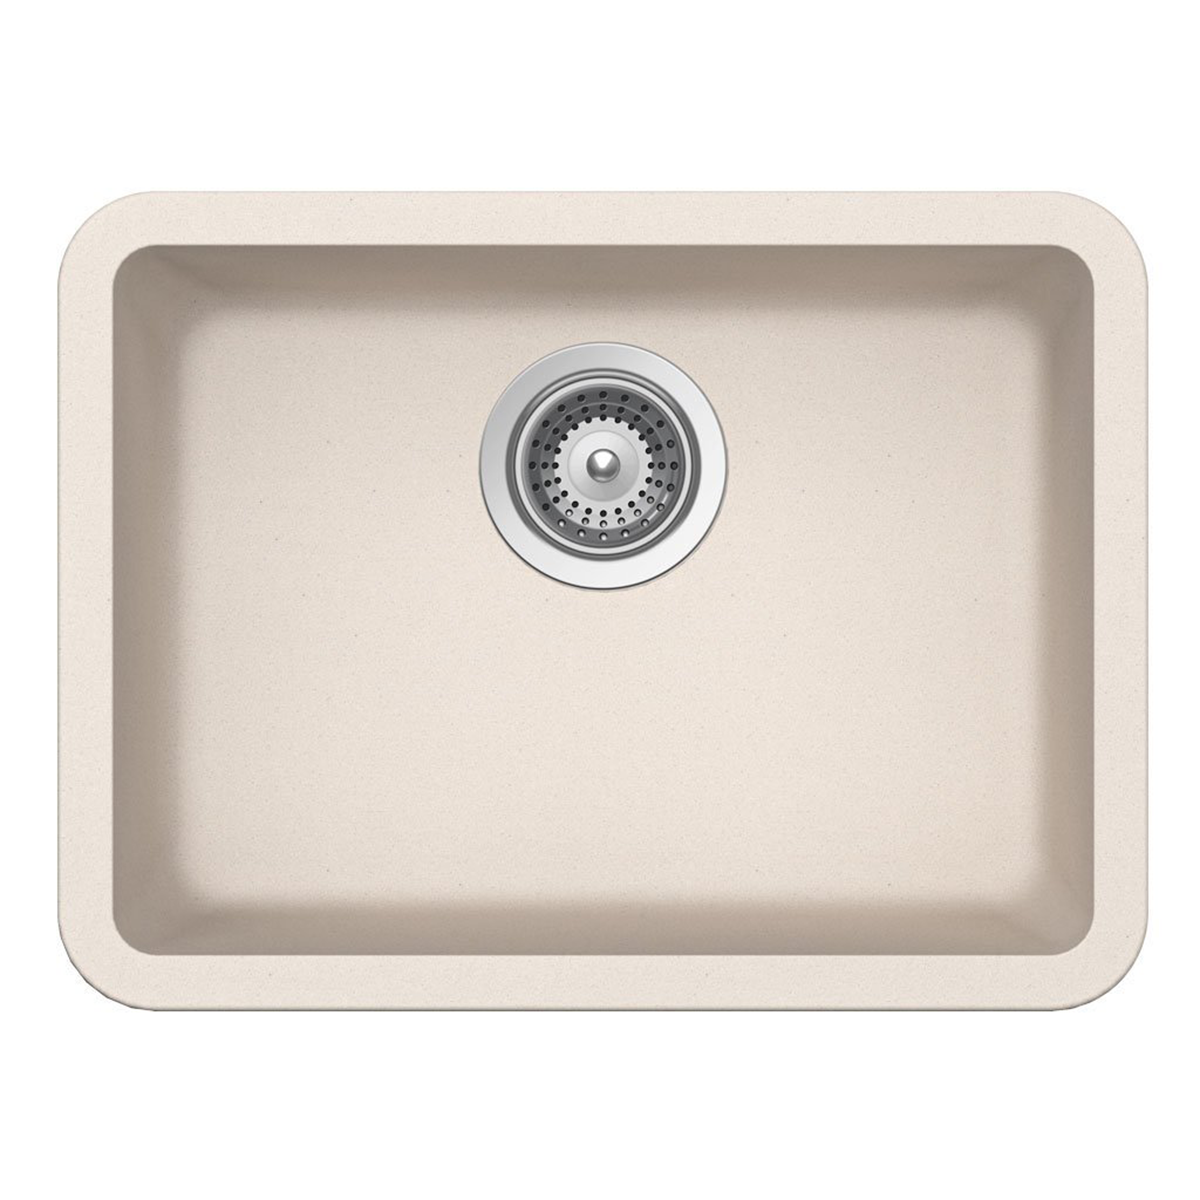 Pelican Int'l Crystallite Series PL-350 19 3/4" x 14 7/8" Sand Granite Composite Undermount Kitchen Sink